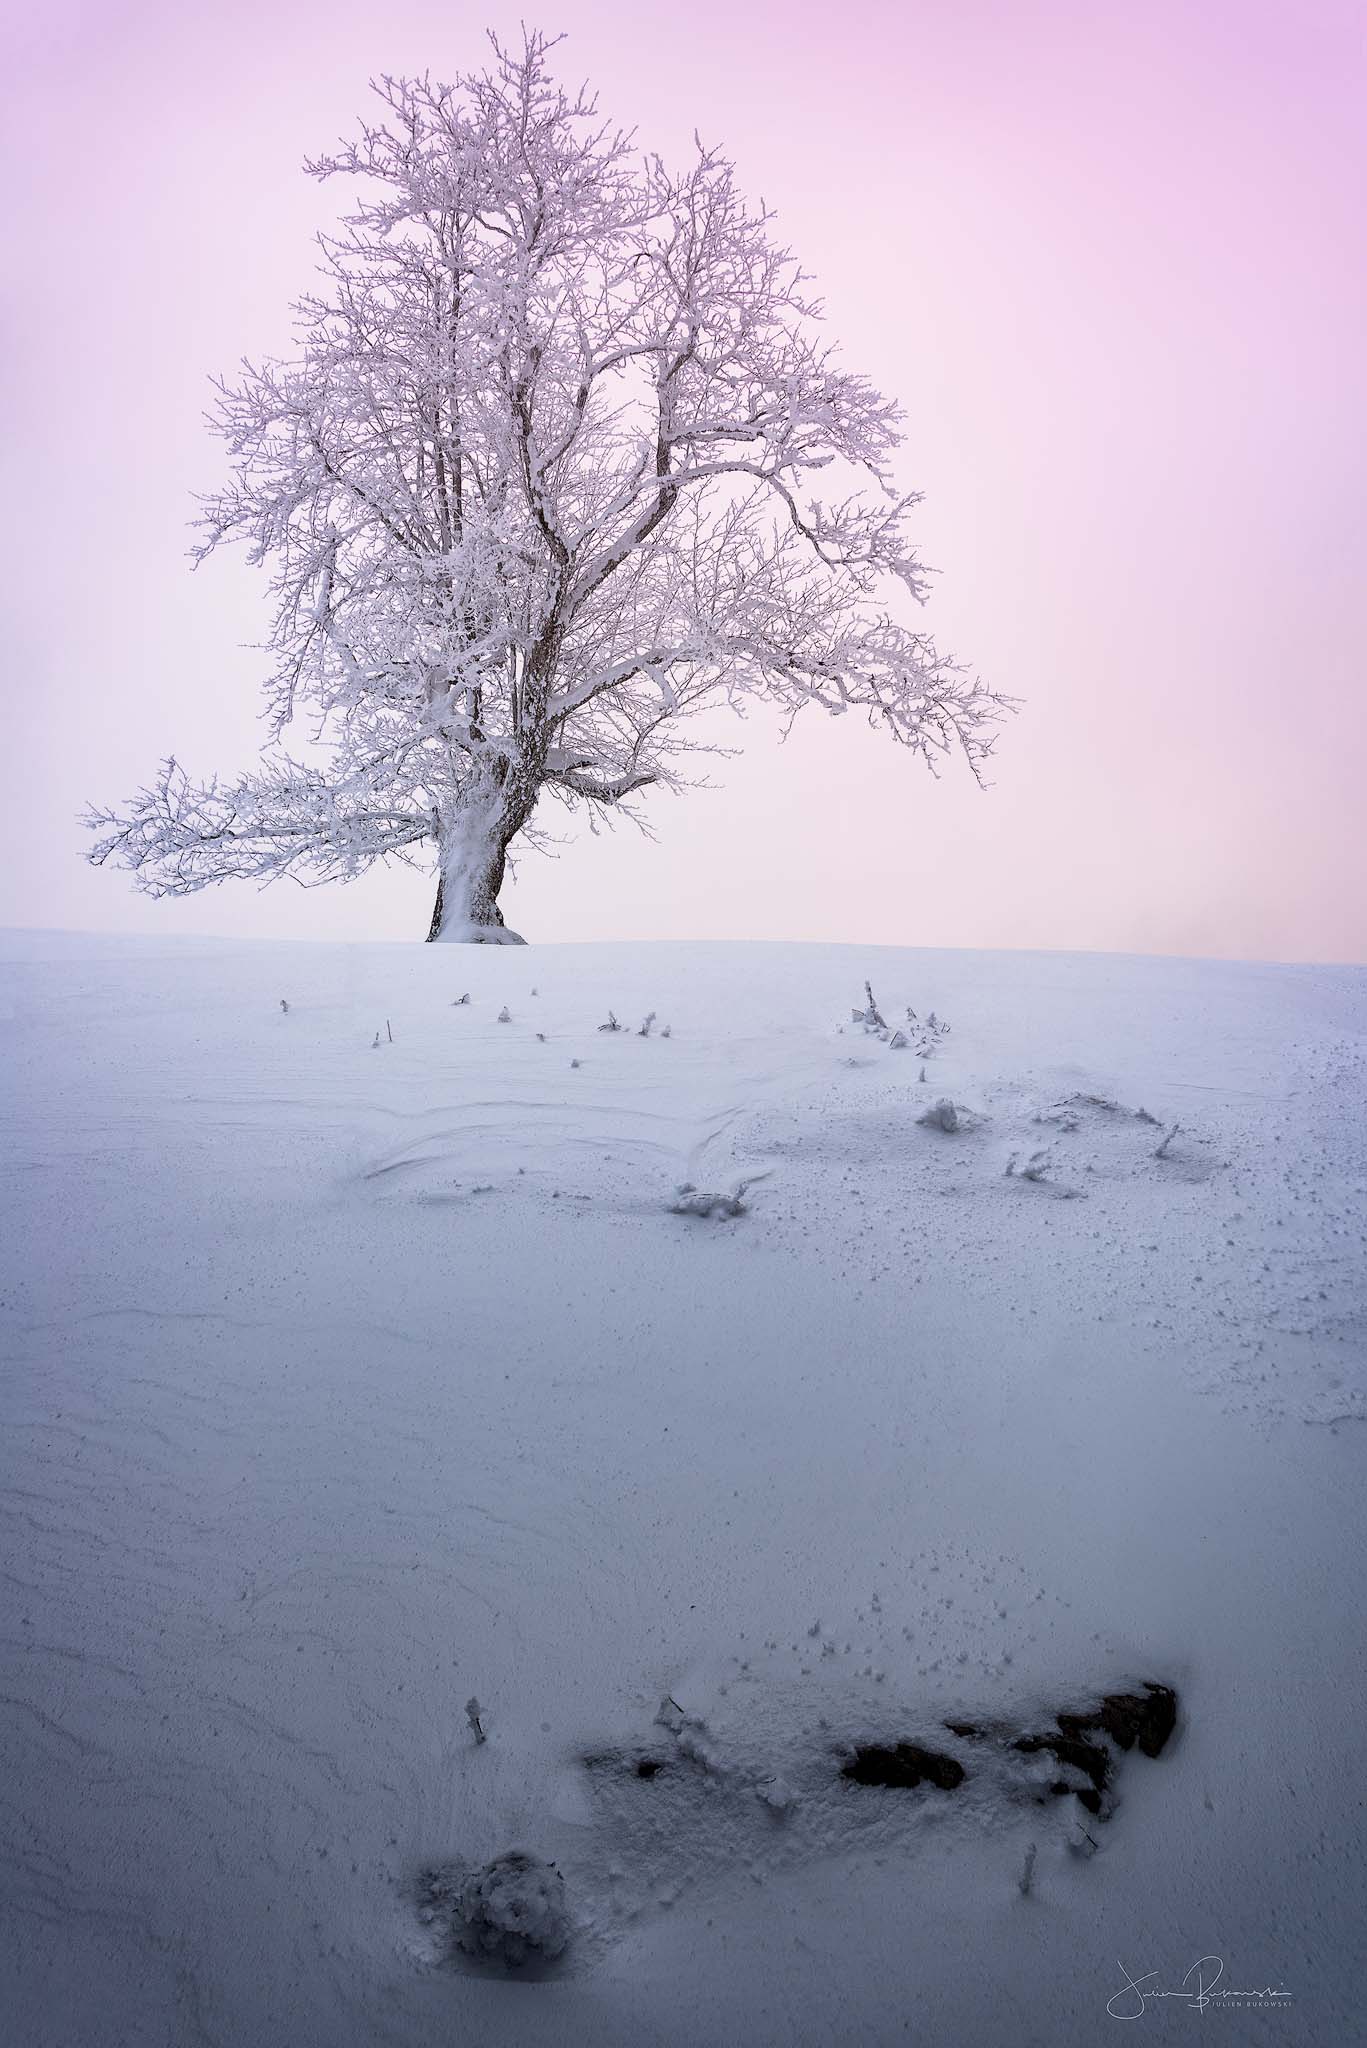 Creux du Van-paysage enneigé-neige-rose-blanc-arbre-arbre enneigé-Suisse-hiver-tirage photo-coucher du soleil-Julien Bukowski